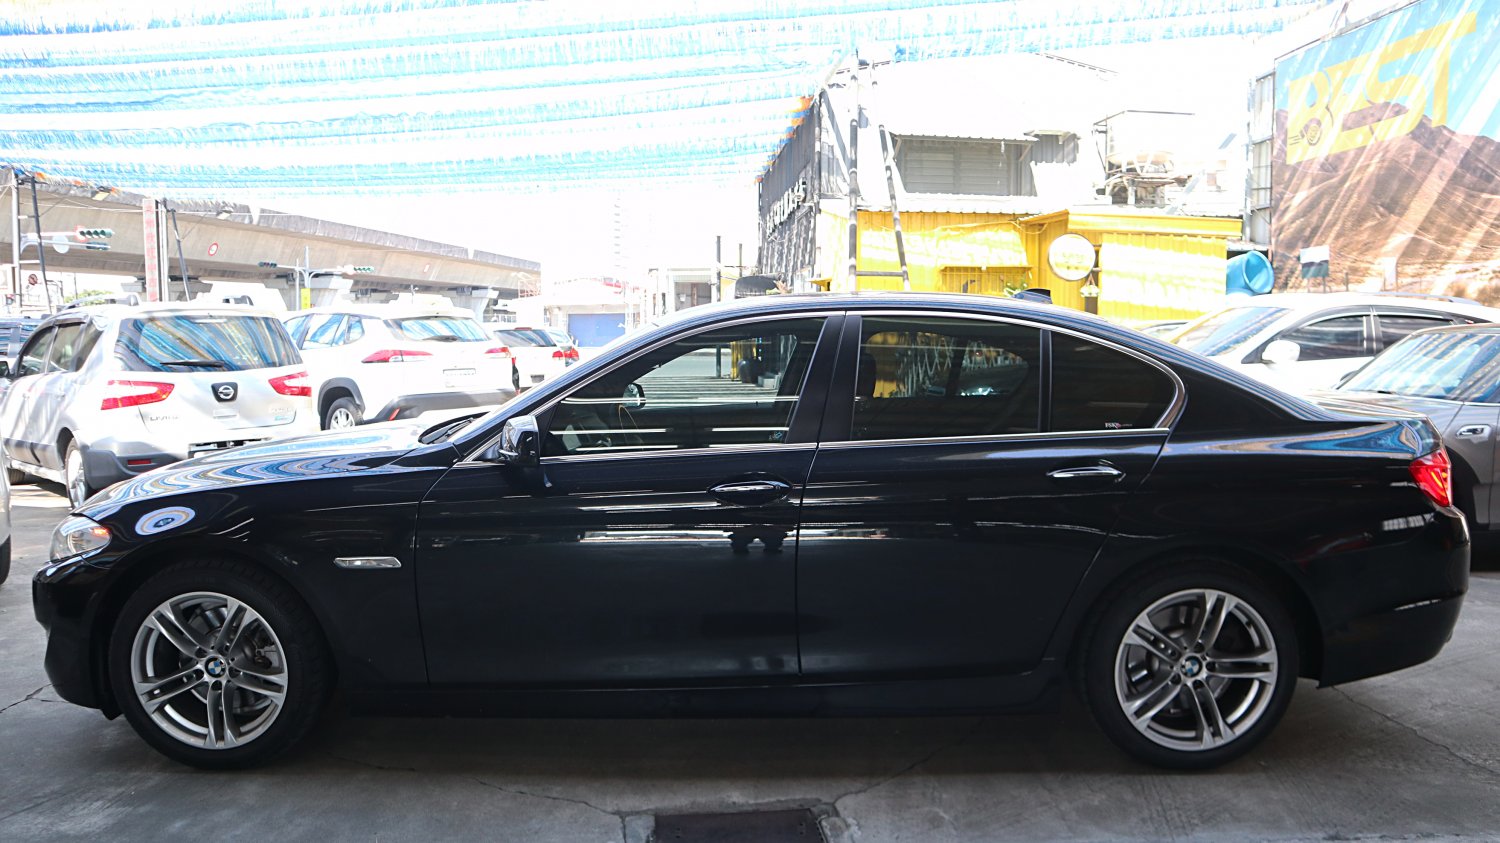 Bmw 寶馬 ／ 5-Series ／ 2012年 ／ 2012年BMW 520D 黑色 寶馬中古車 ／ 九州欣旺汽車 (台南)